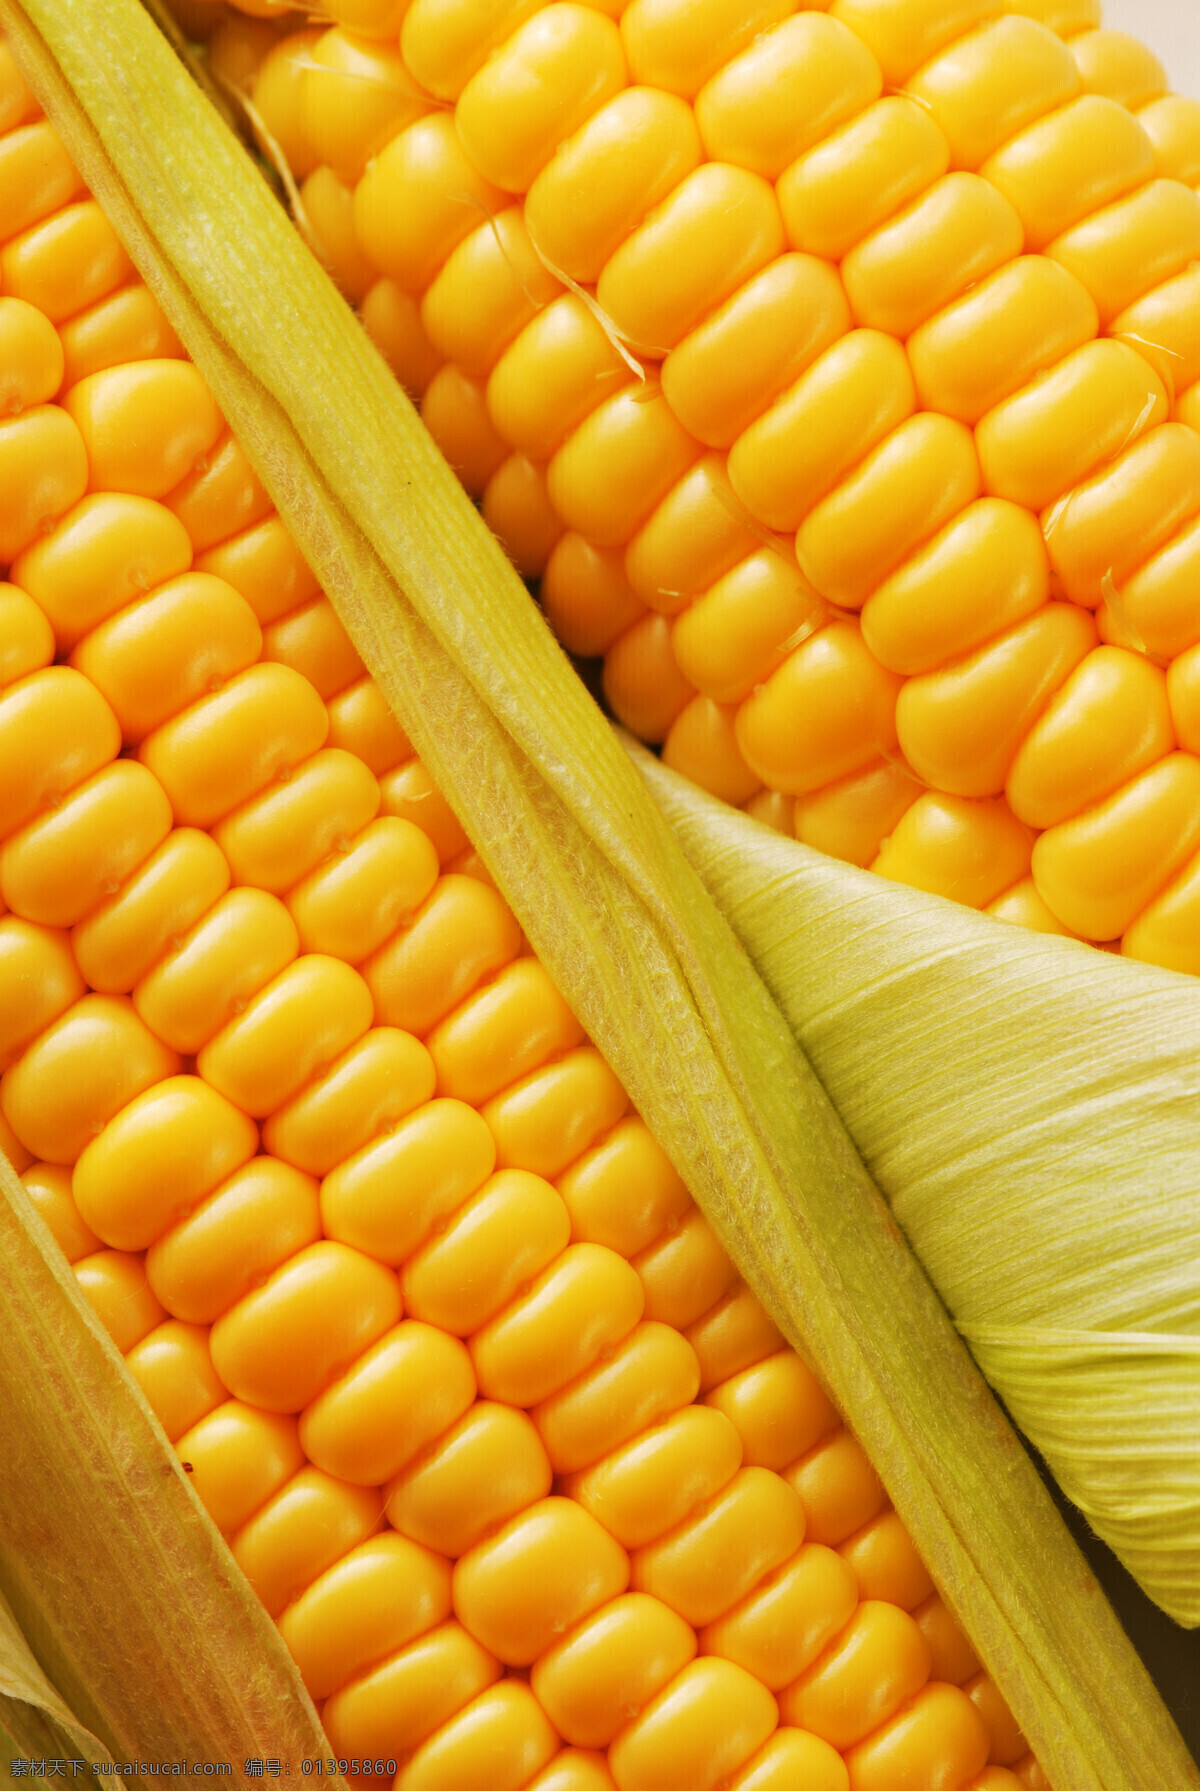 金色 玉米 生物世界 蔬菜 五谷 杂粮 植物 金色玉米 蔬菜主题 风景 生活 旅游餐饮